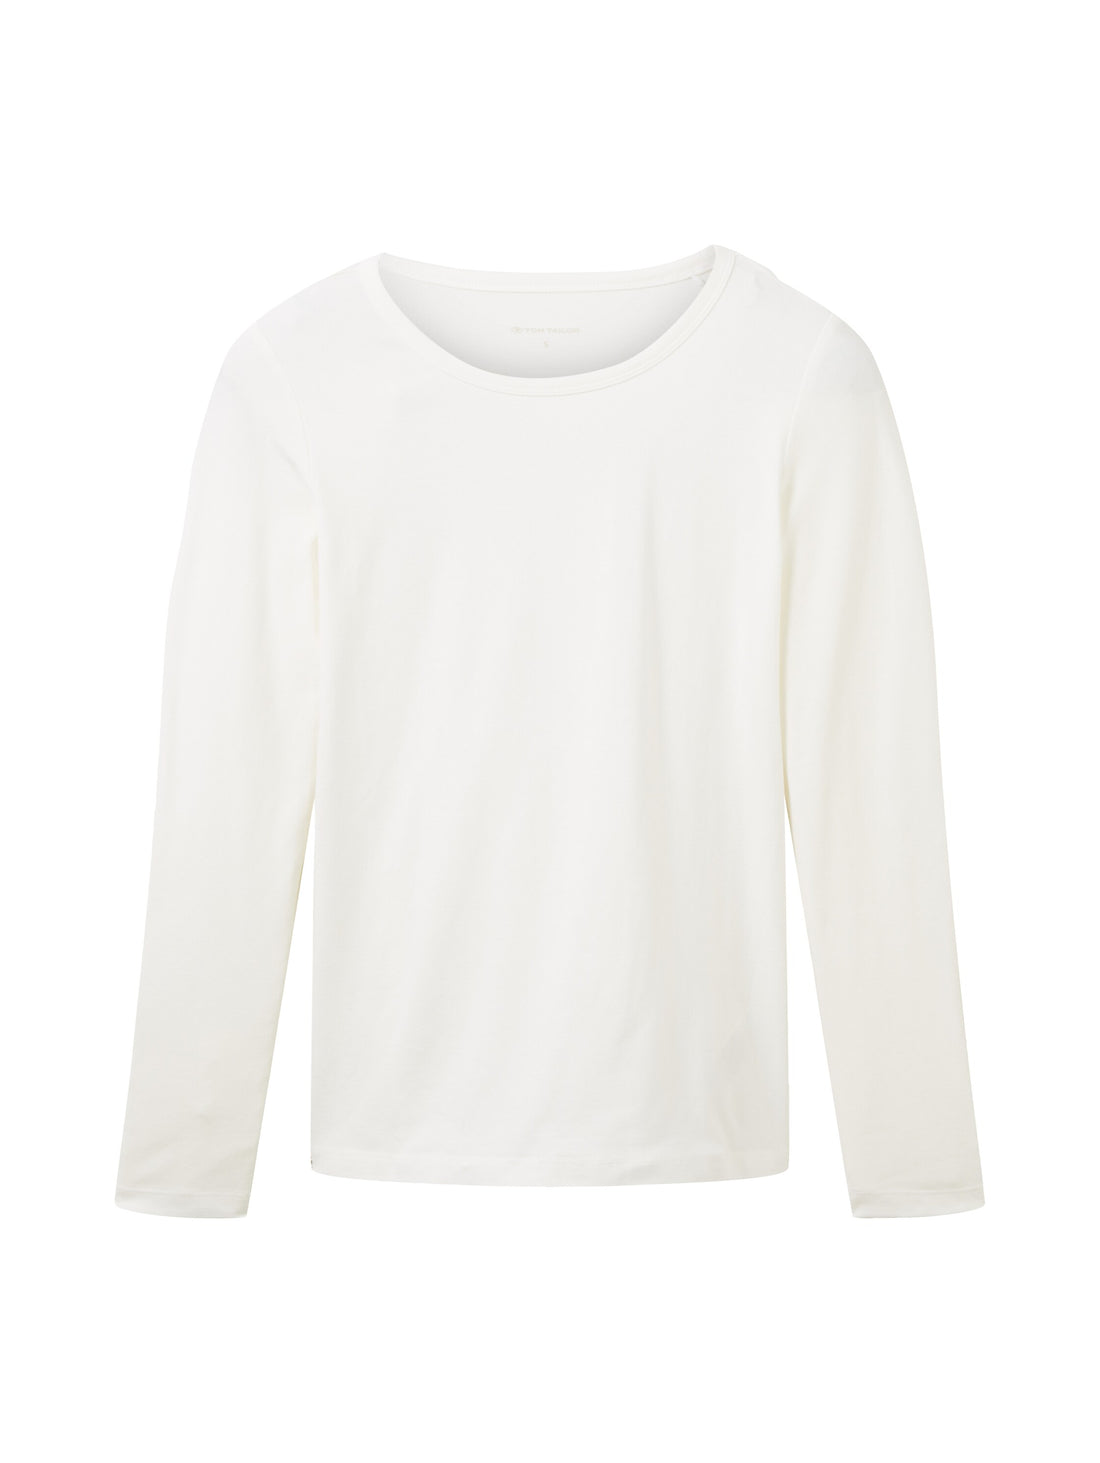 White Long Sleeve Round Neck T-Shirt